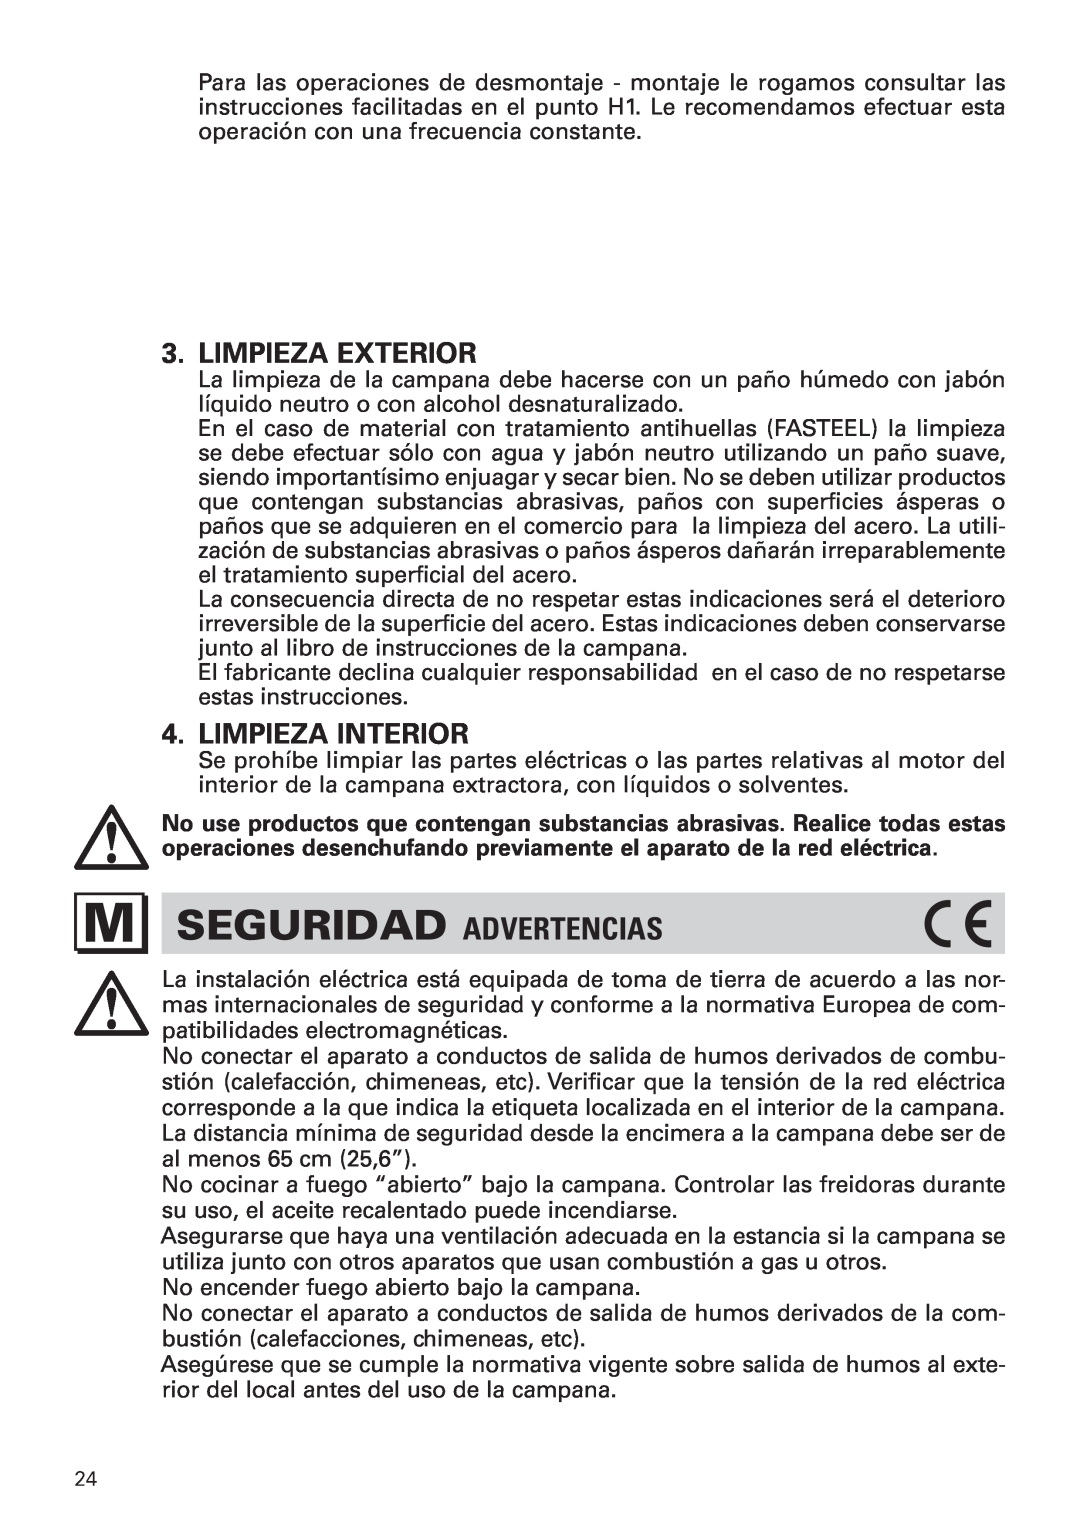 Bertazzoni KIN 36 PRO X manual M Seguridad Advertencias, Limpieza Exterior, Limpieza Interior 